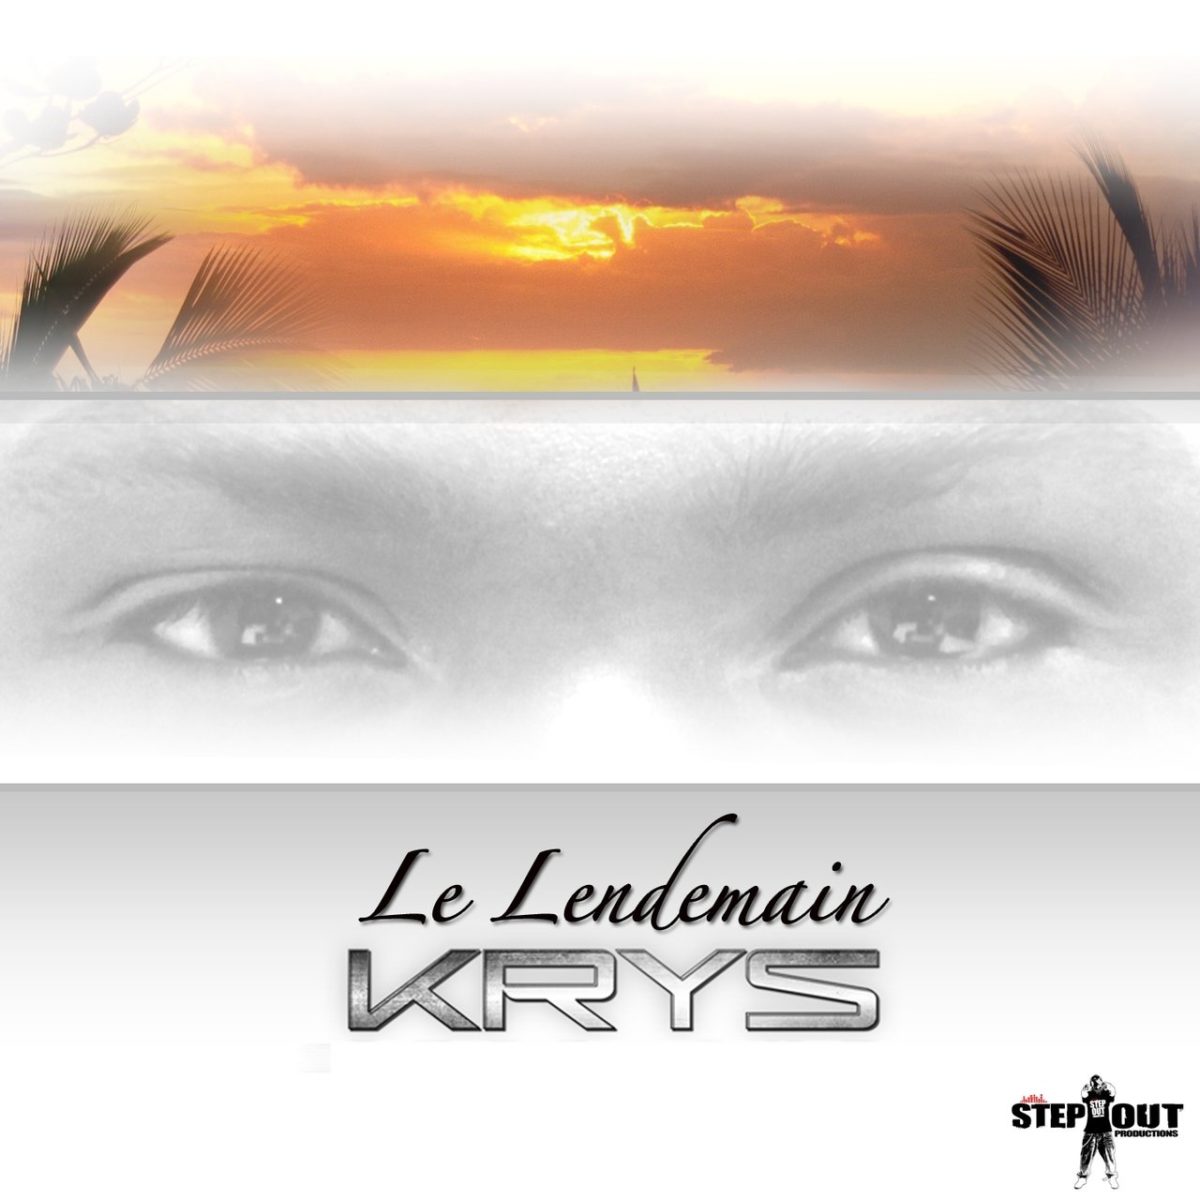 Krys - Le Lendemain (Cover)